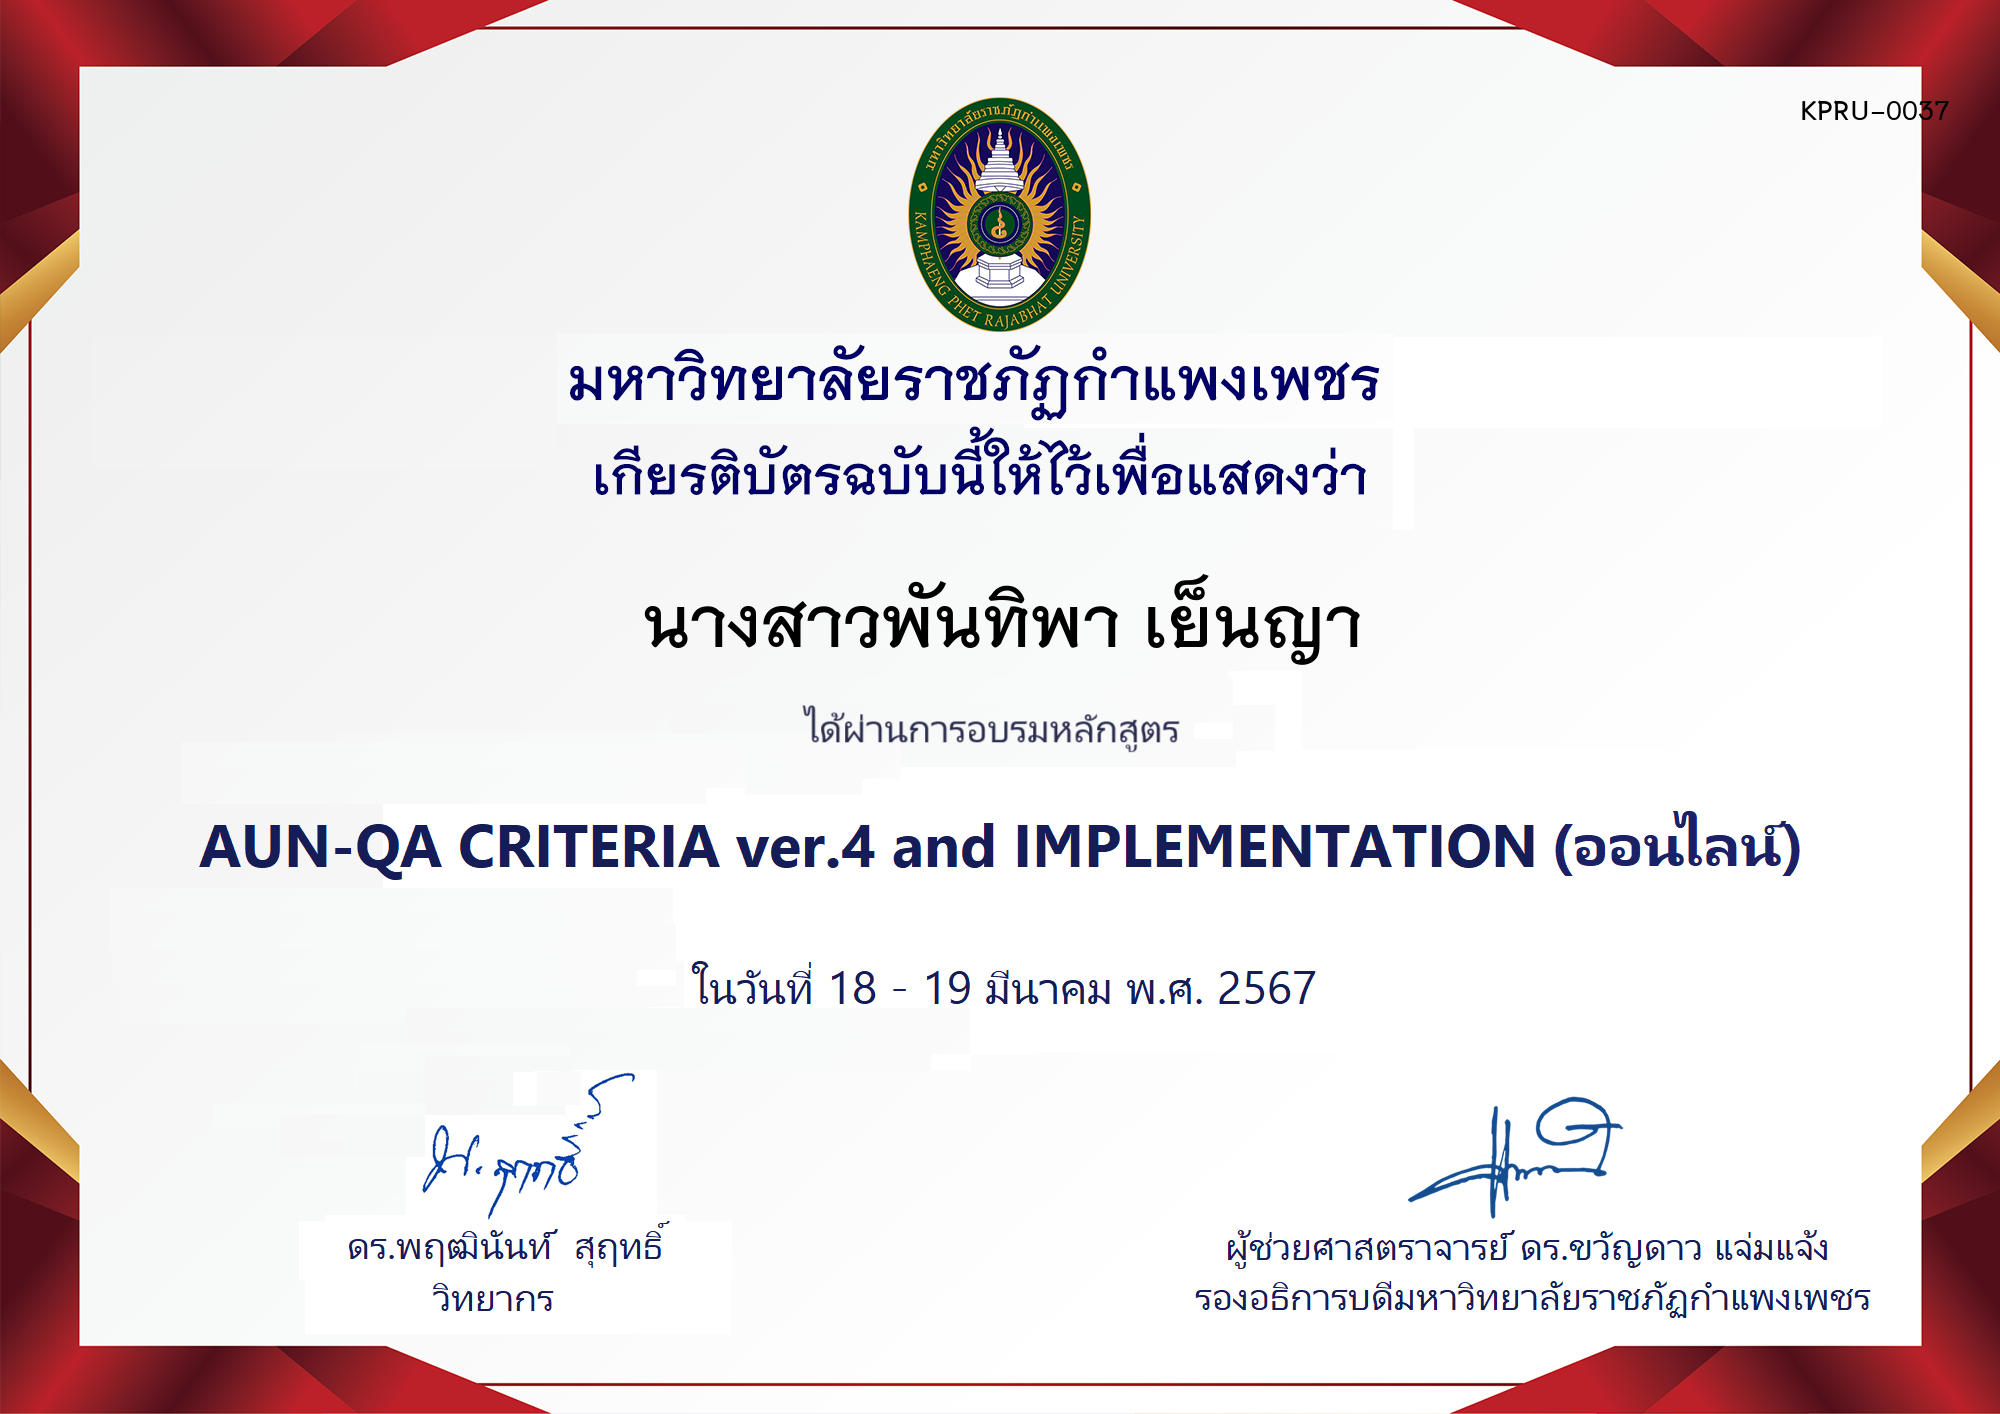 เกียรติบัตร โครงการอบรม AUN-QA criteria ver.4 and Implementation ของ นางสาวพันทิพา เย็นญา